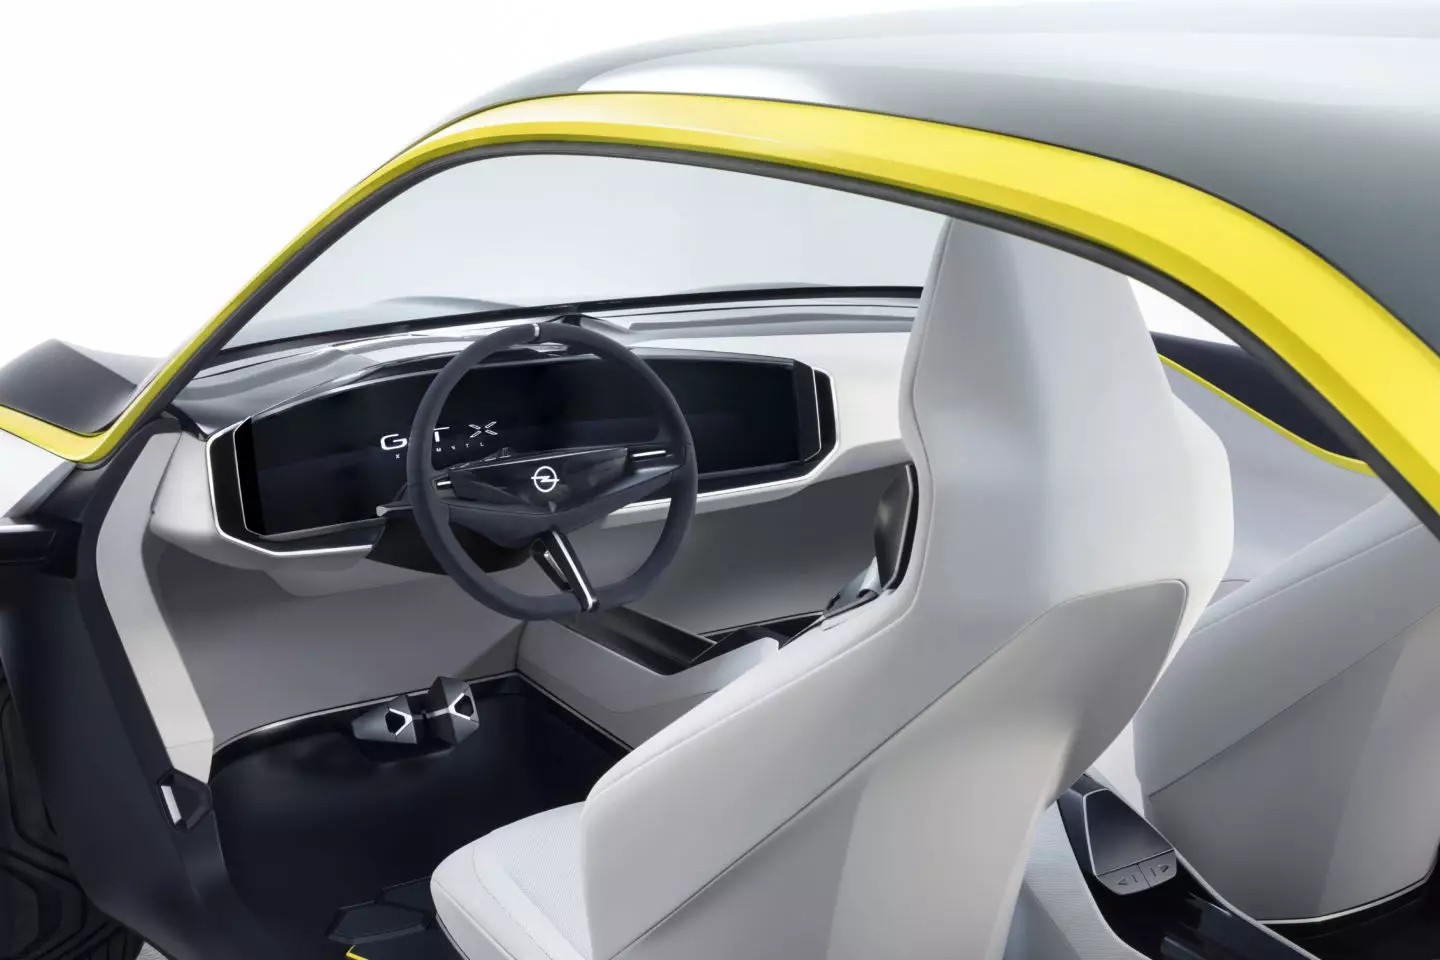 2018 Opel GT X تجرباتی